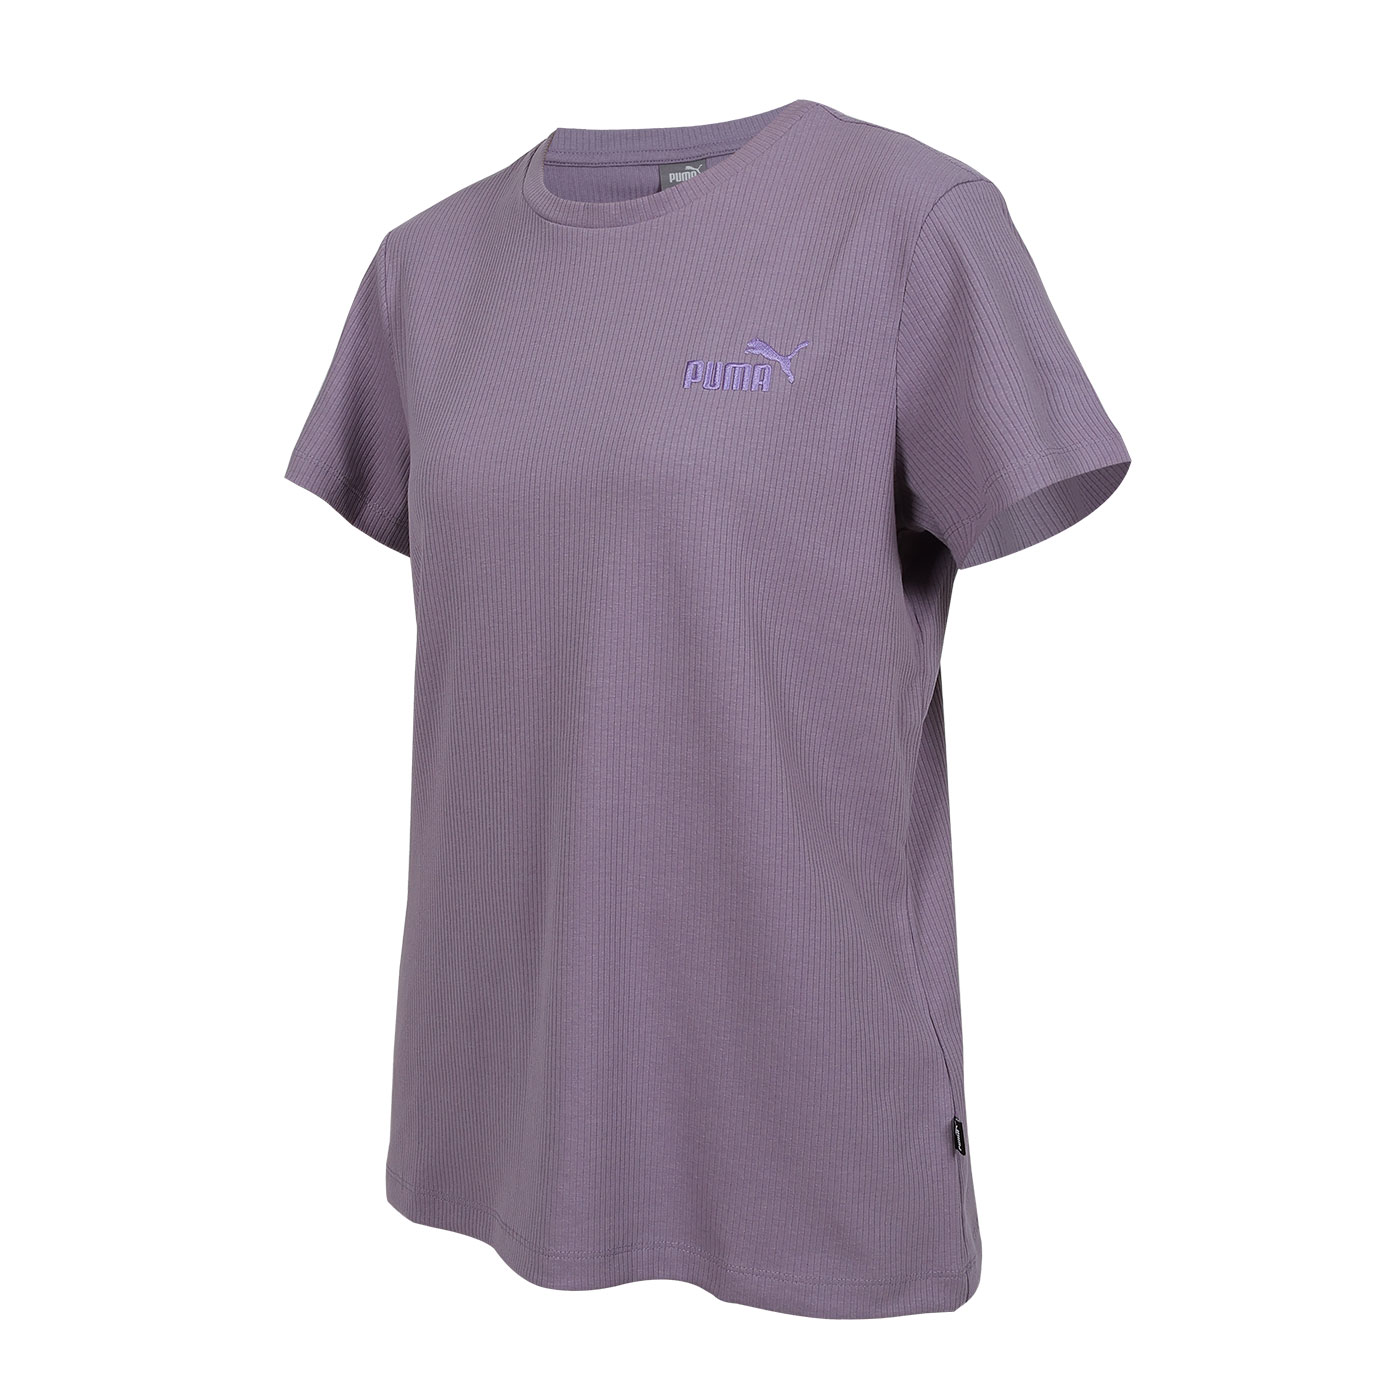 PUMA 女款基本系列羅紋短袖T恤  68149930 - 薰衣紫